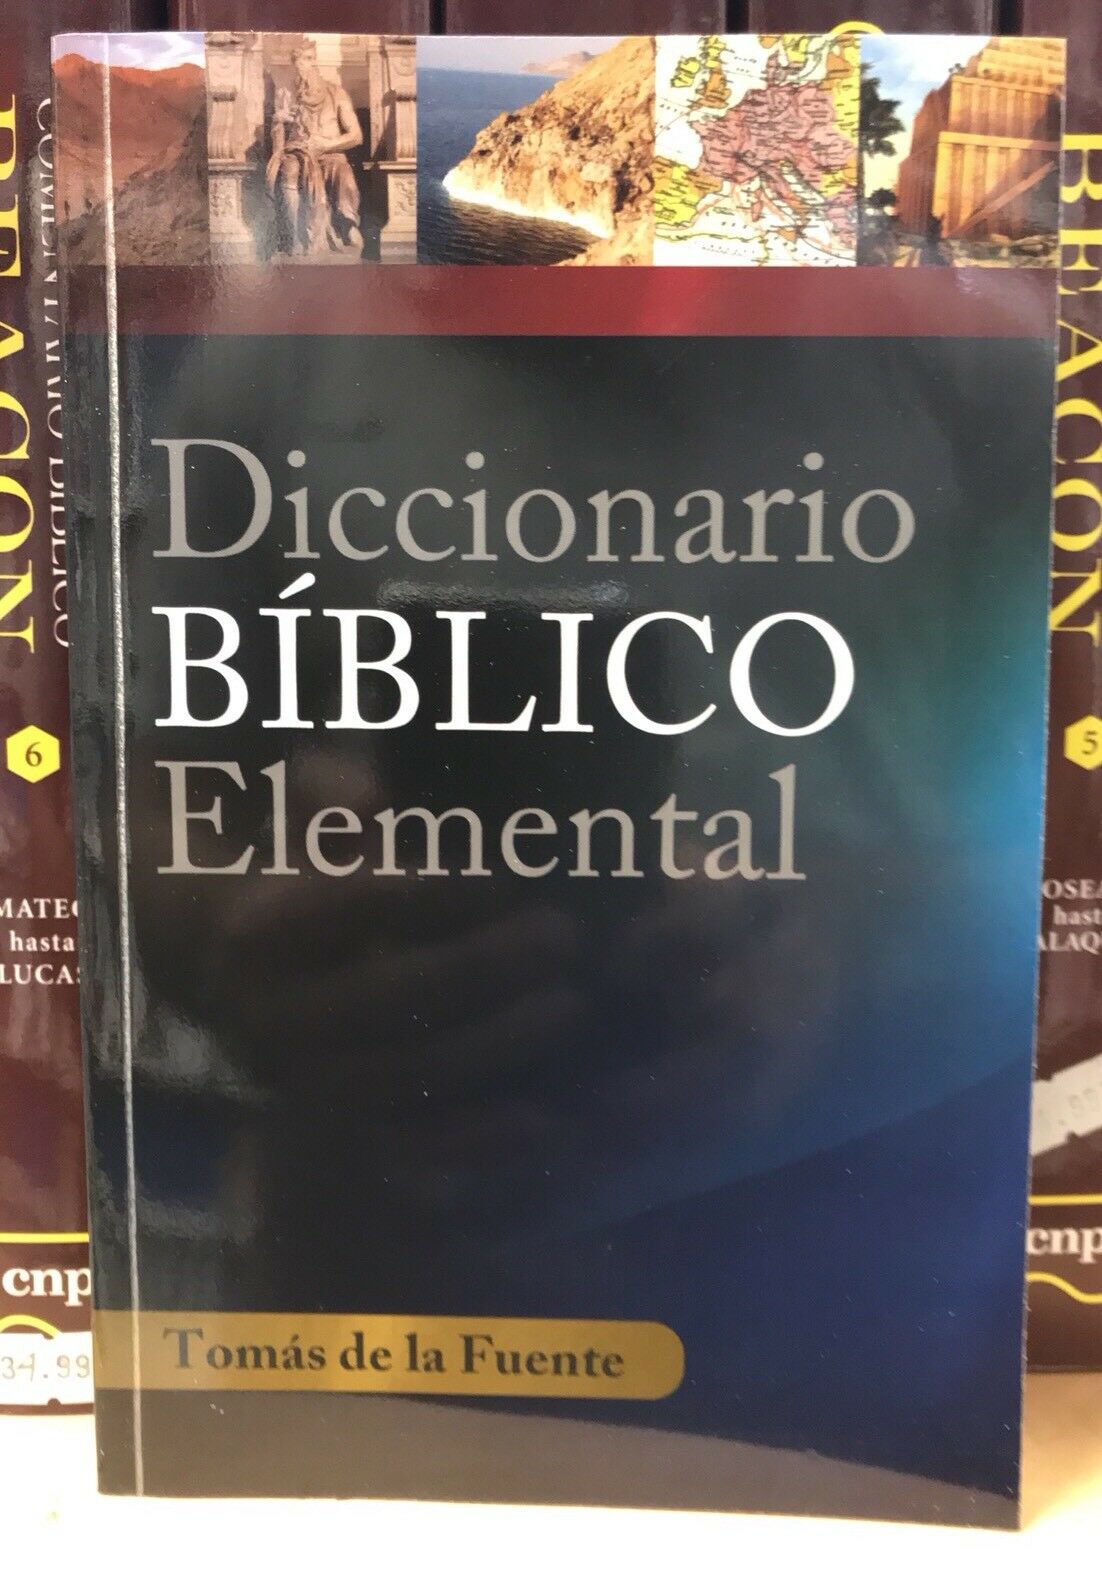 Diccionario Biblico Strong En Linea Gratis